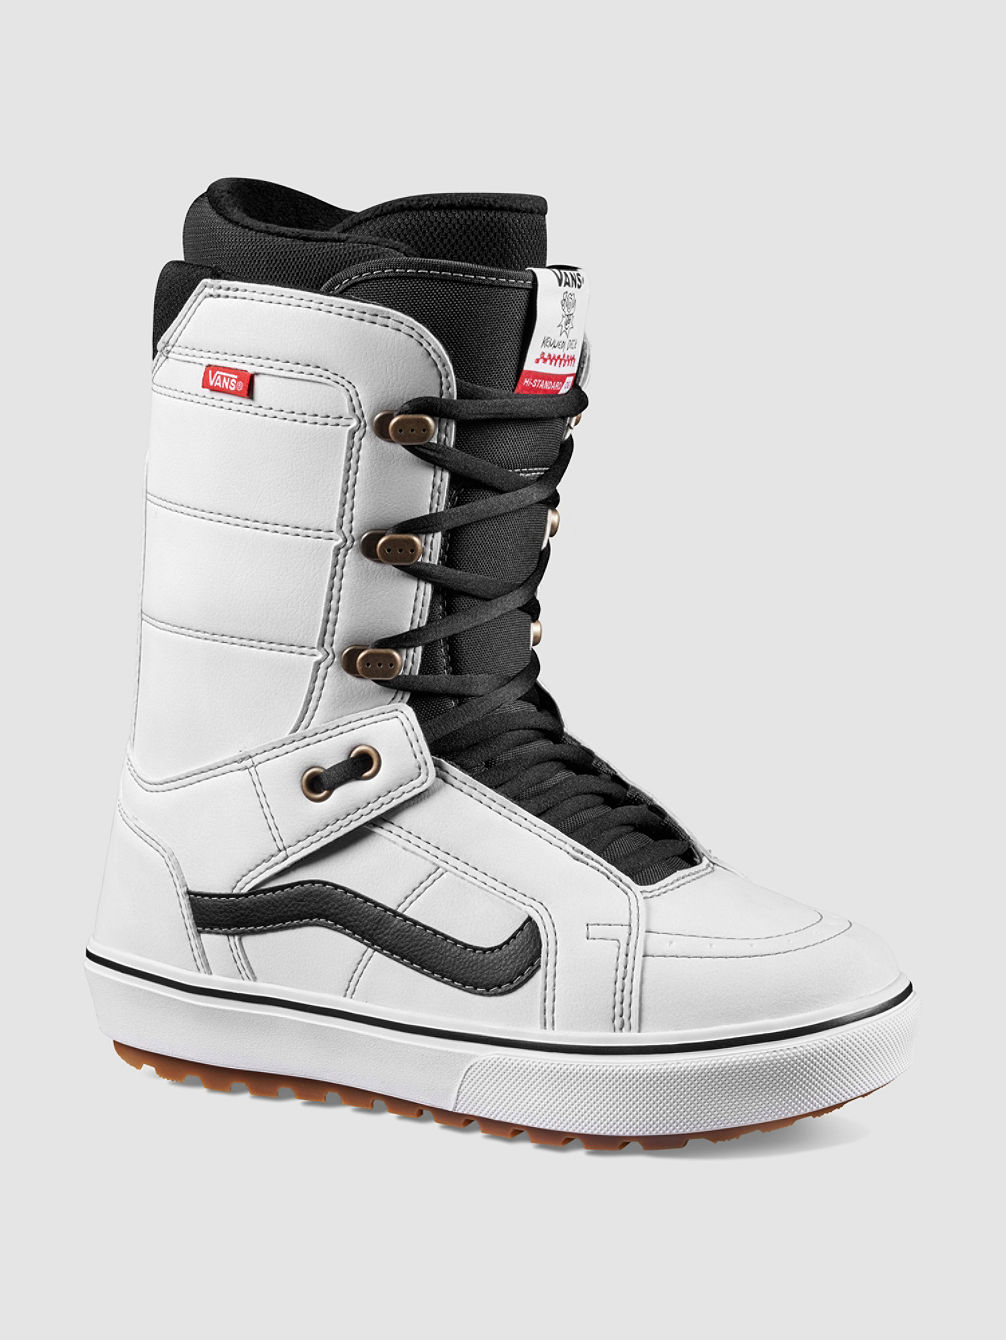 Hi-Standard OG Boots de Snowboard